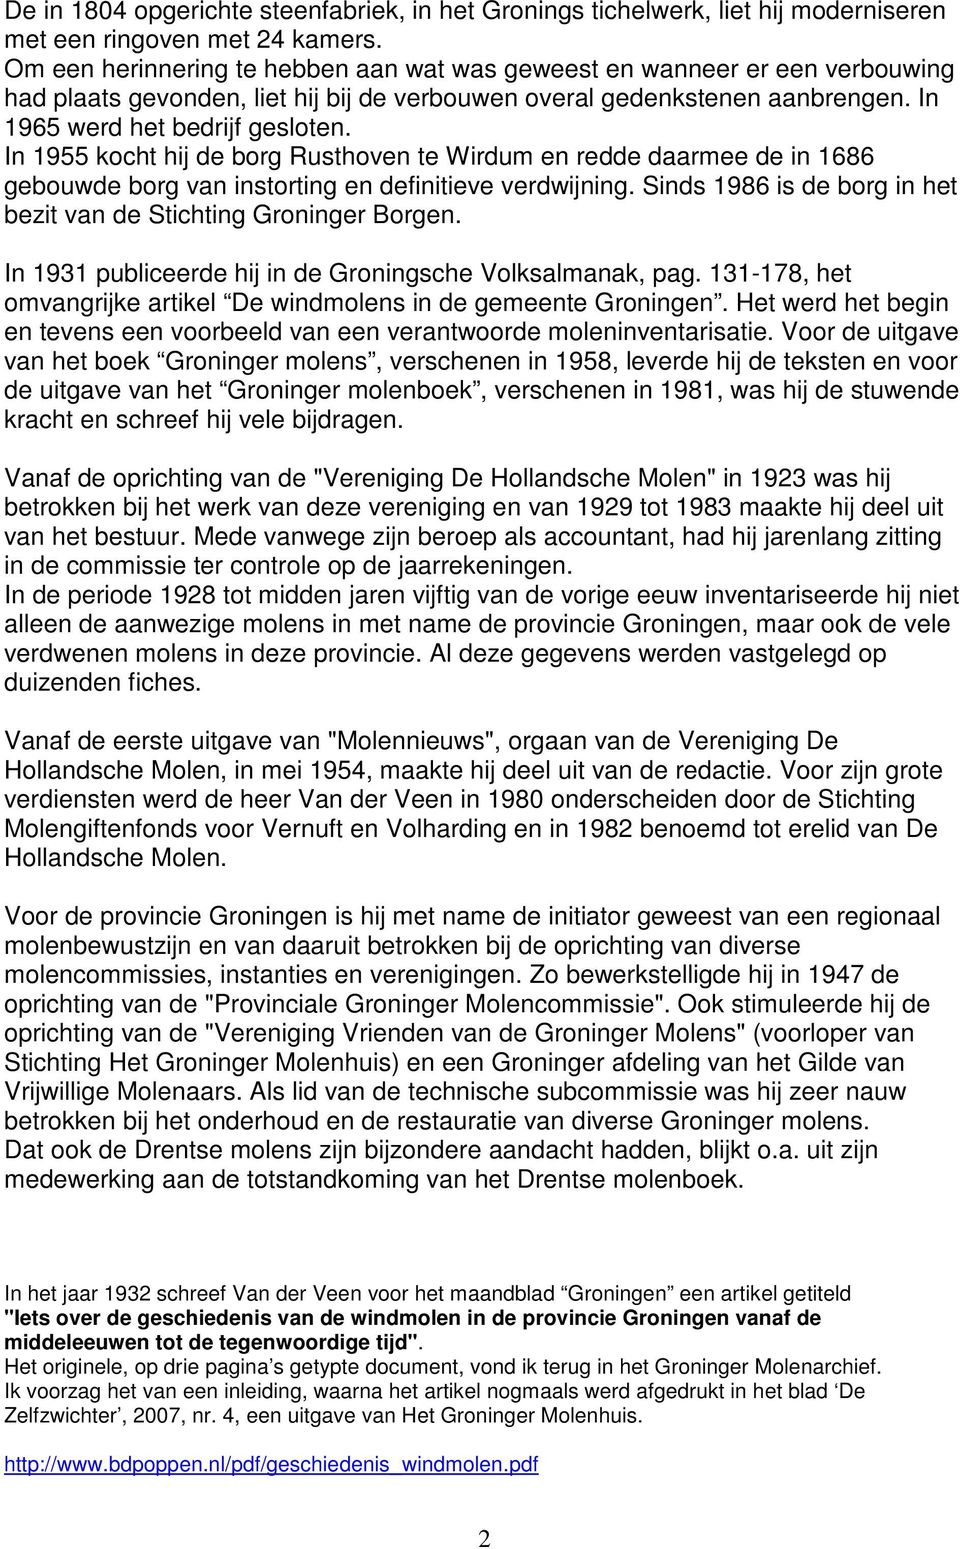 In 1955 kocht hij de borg Rusthoven te Wirdum en redde daarmee de in 1686 gebouwde borg van instorting en definitieve verdwijning. Sinds 1986 is de borg in het bezit van de Stichting Groninger Borgen.